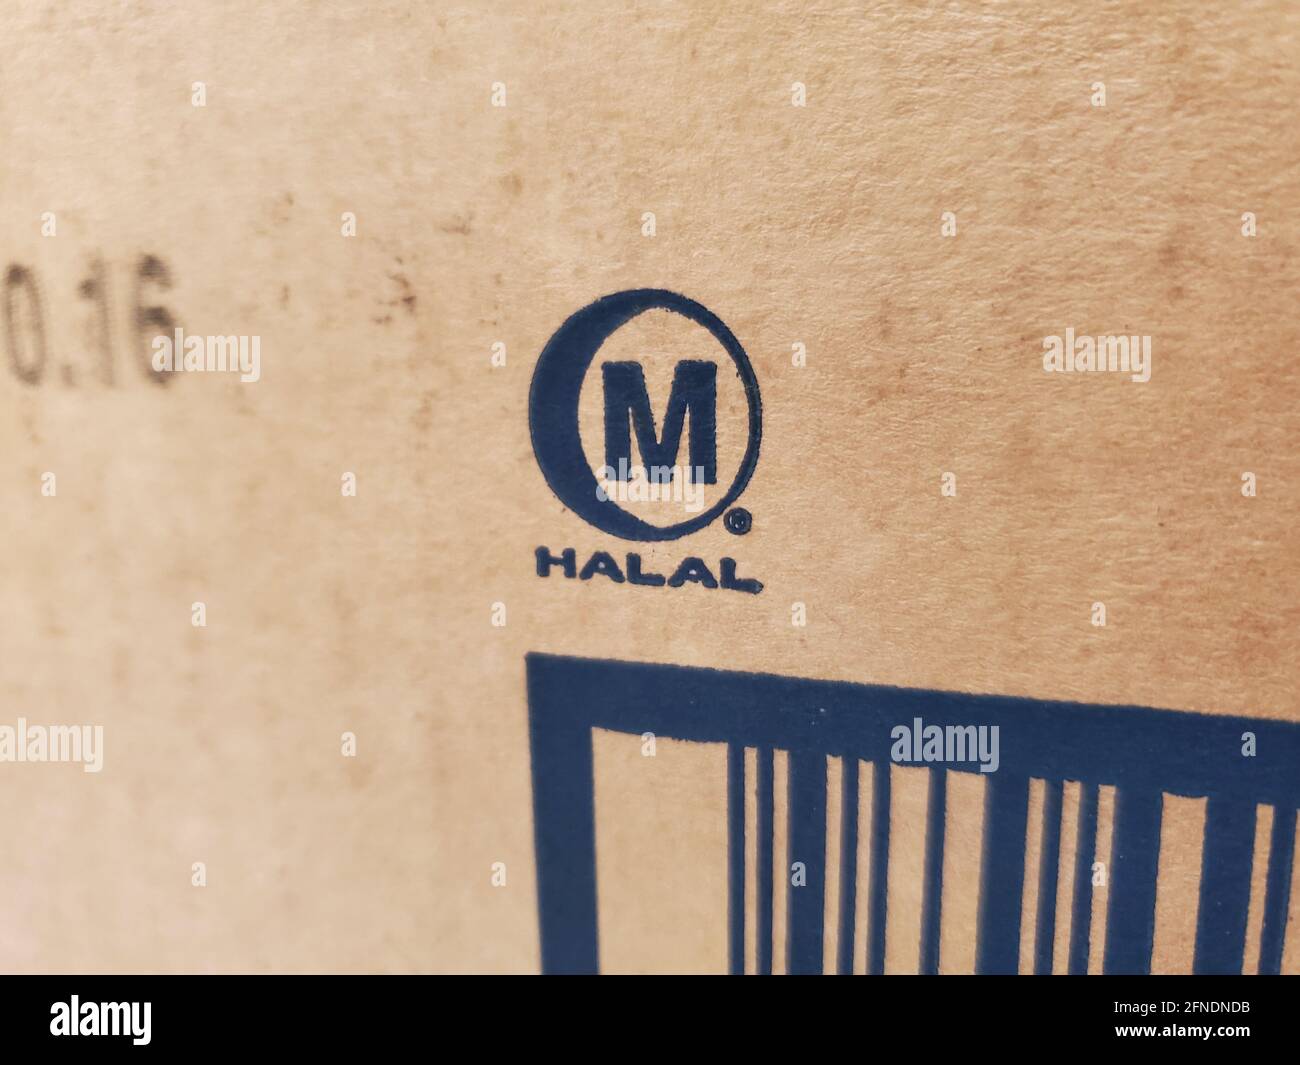 Nahaufnahme eines gelbfärbenden Pakets mit dem Markenzeichen des Islamic Food and Nutrition Council of America (IFANCA), einem Halbmondkreis mit „M“ und dem Wort „HALAL“, aufgenommen in Lafayette, Kalifornien, 22. Januar 2021. () Stockfoto